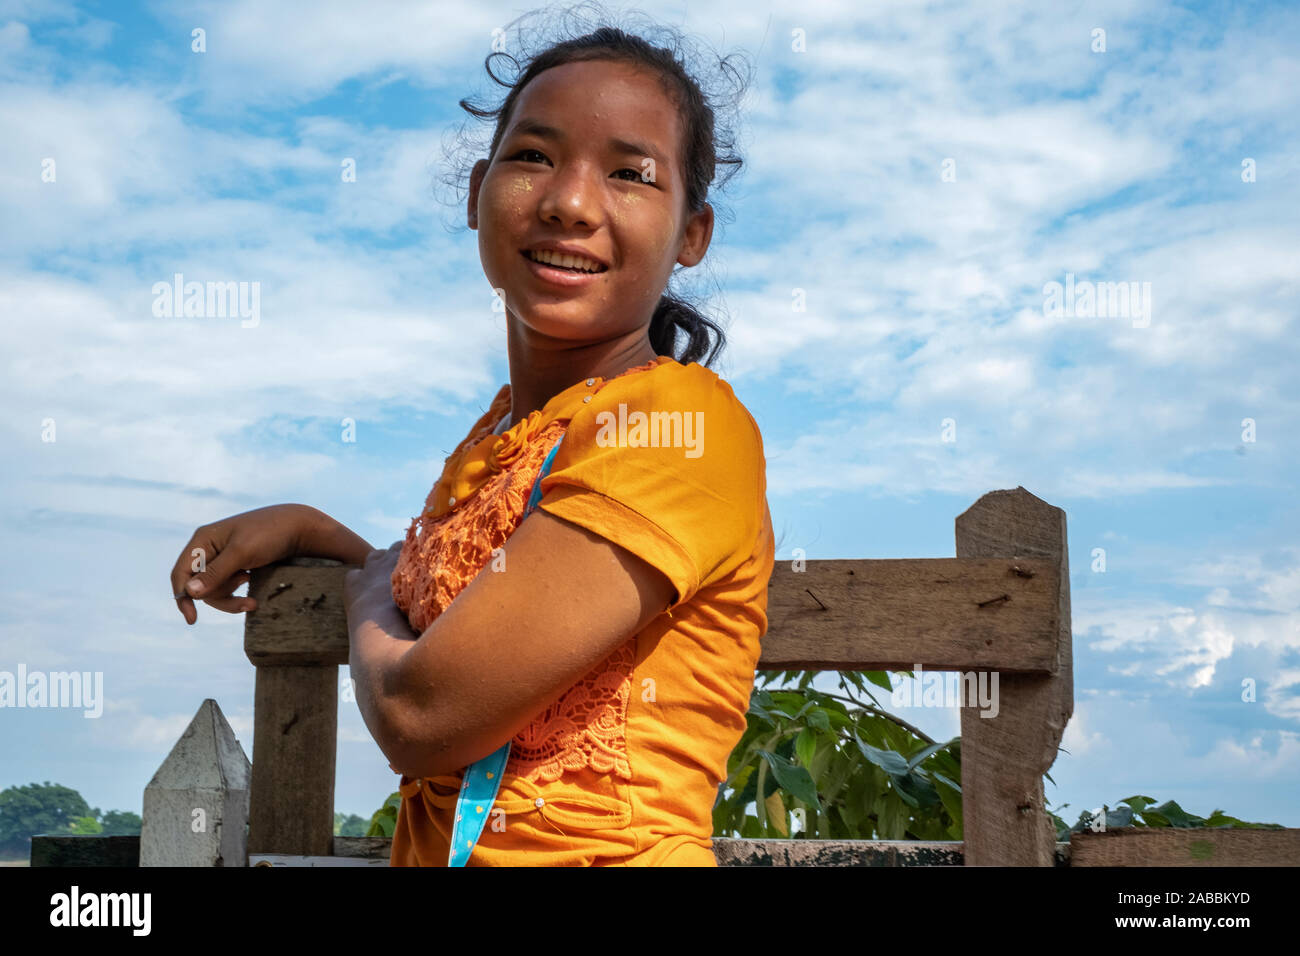 Giovane e bella ragazza birmano in un giallo brillante camicetta attende di salire a bordo di un taxi acqueo in Kanne villaggio sul fiume Chindwin in Myanmar (Birmania) Foto Stock